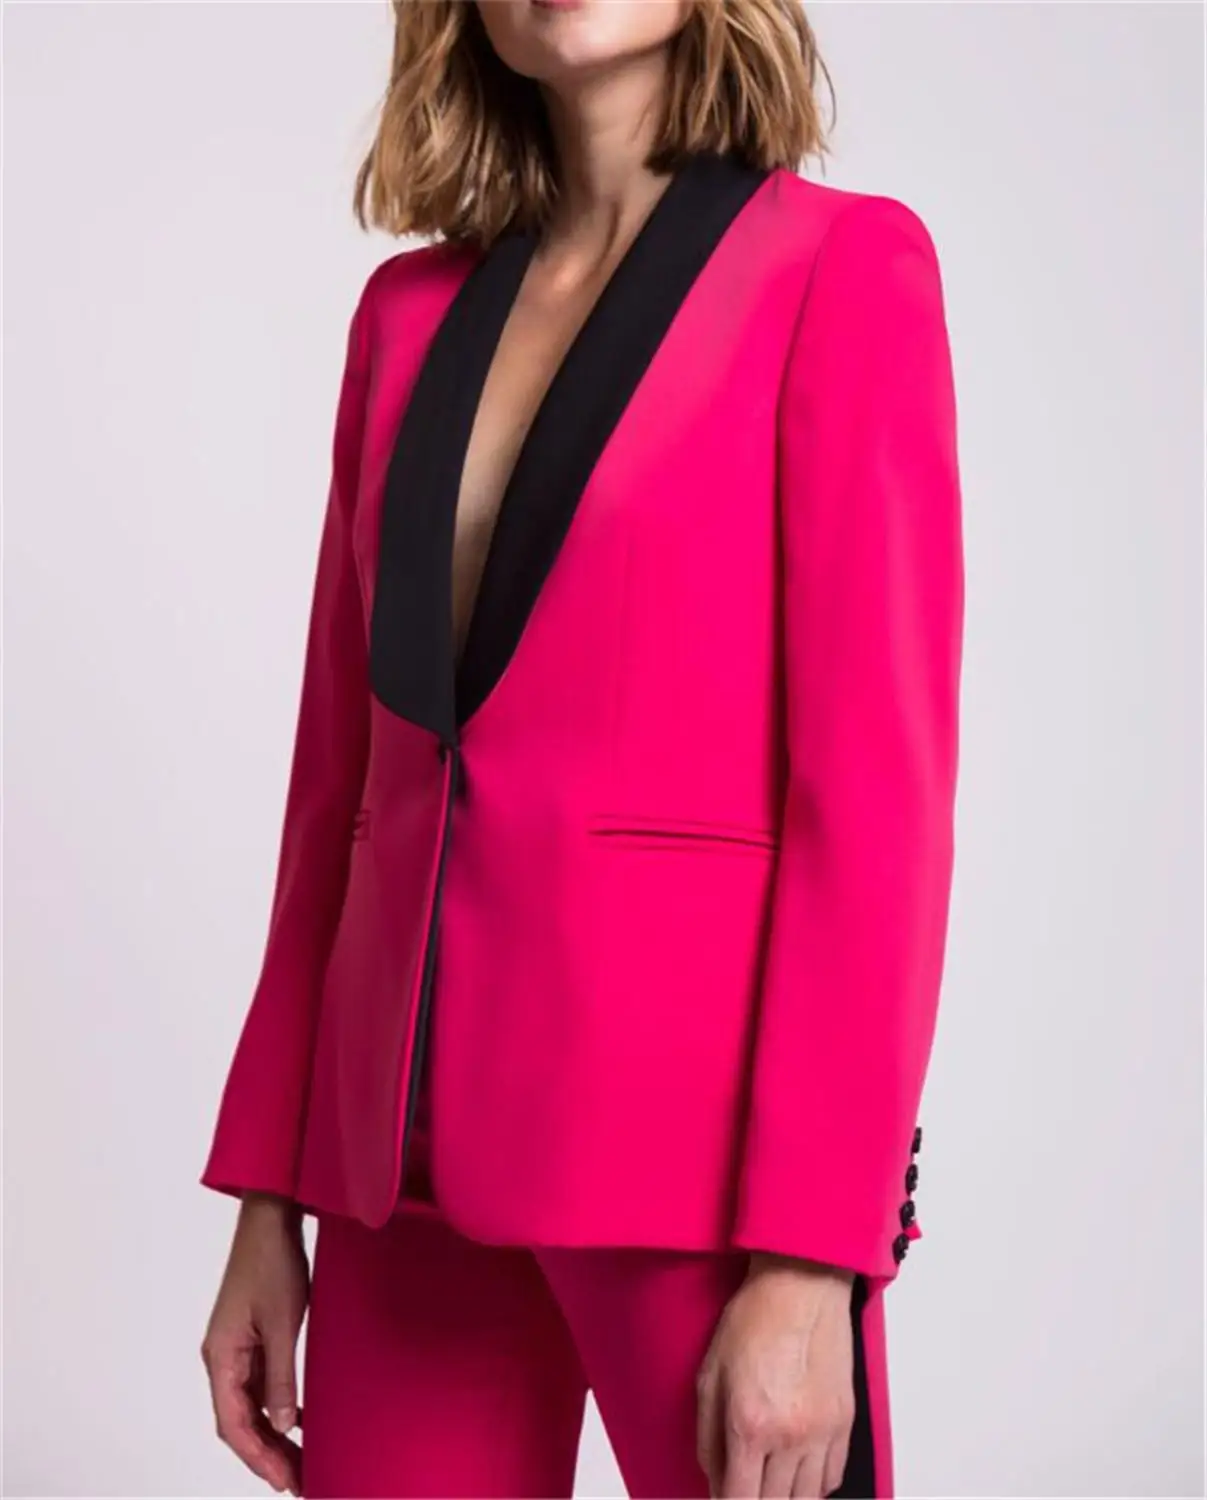 Custom Made 2 Piece Set (Jacket+Vest) Fuchsia Women Elegant Pants Suits Ladies Business Pant Suits Formal Office Suits